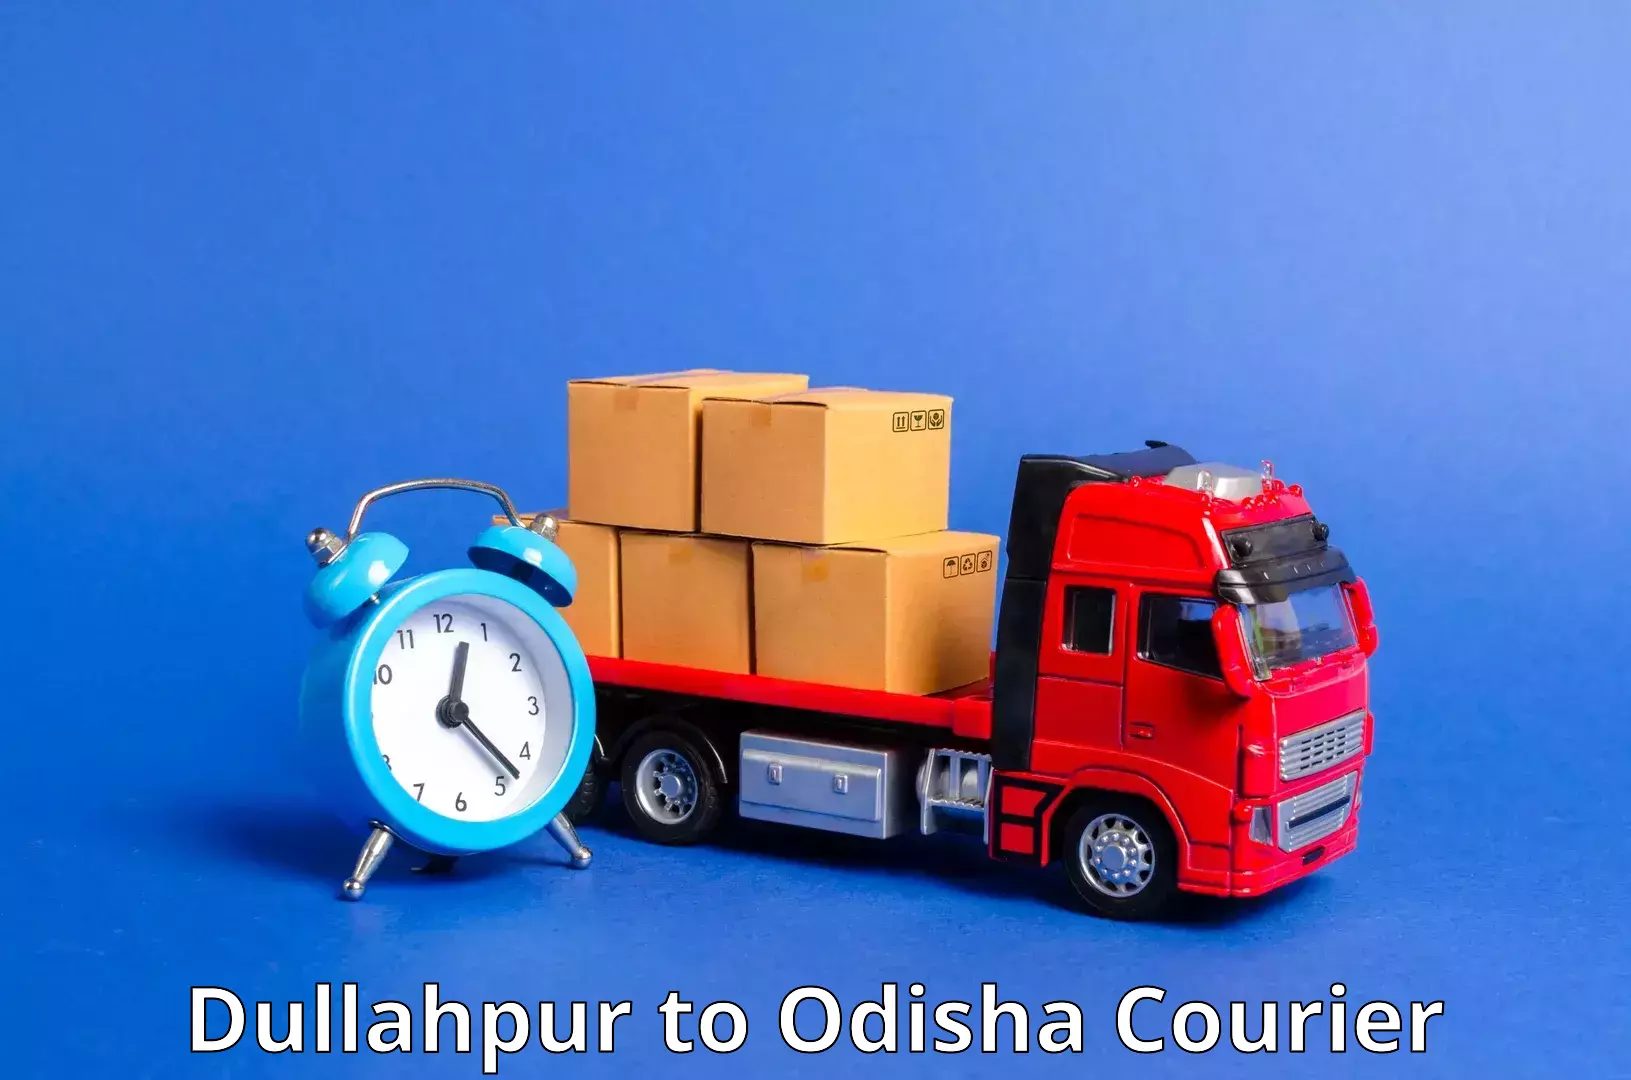 Air courier services Dullahpur to Lahunipara